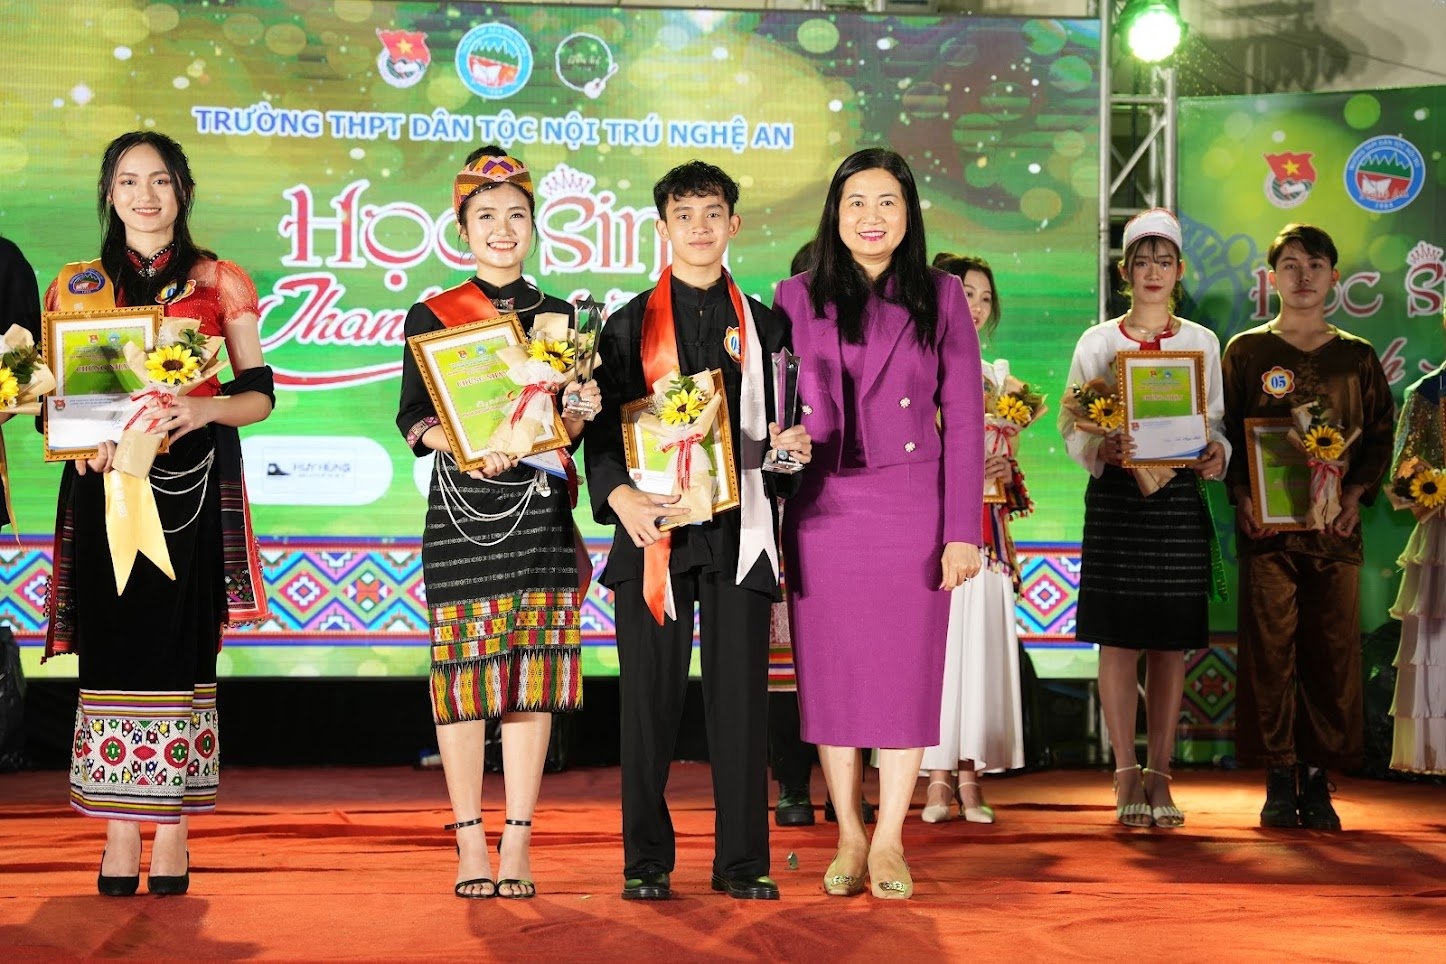 Cô Hiệu trưởng Nguyễn Thị Kiều Hoa trao giải thưởng cho các em đạt giải trong Cuộc thi học sinh thanh lịch của trường.